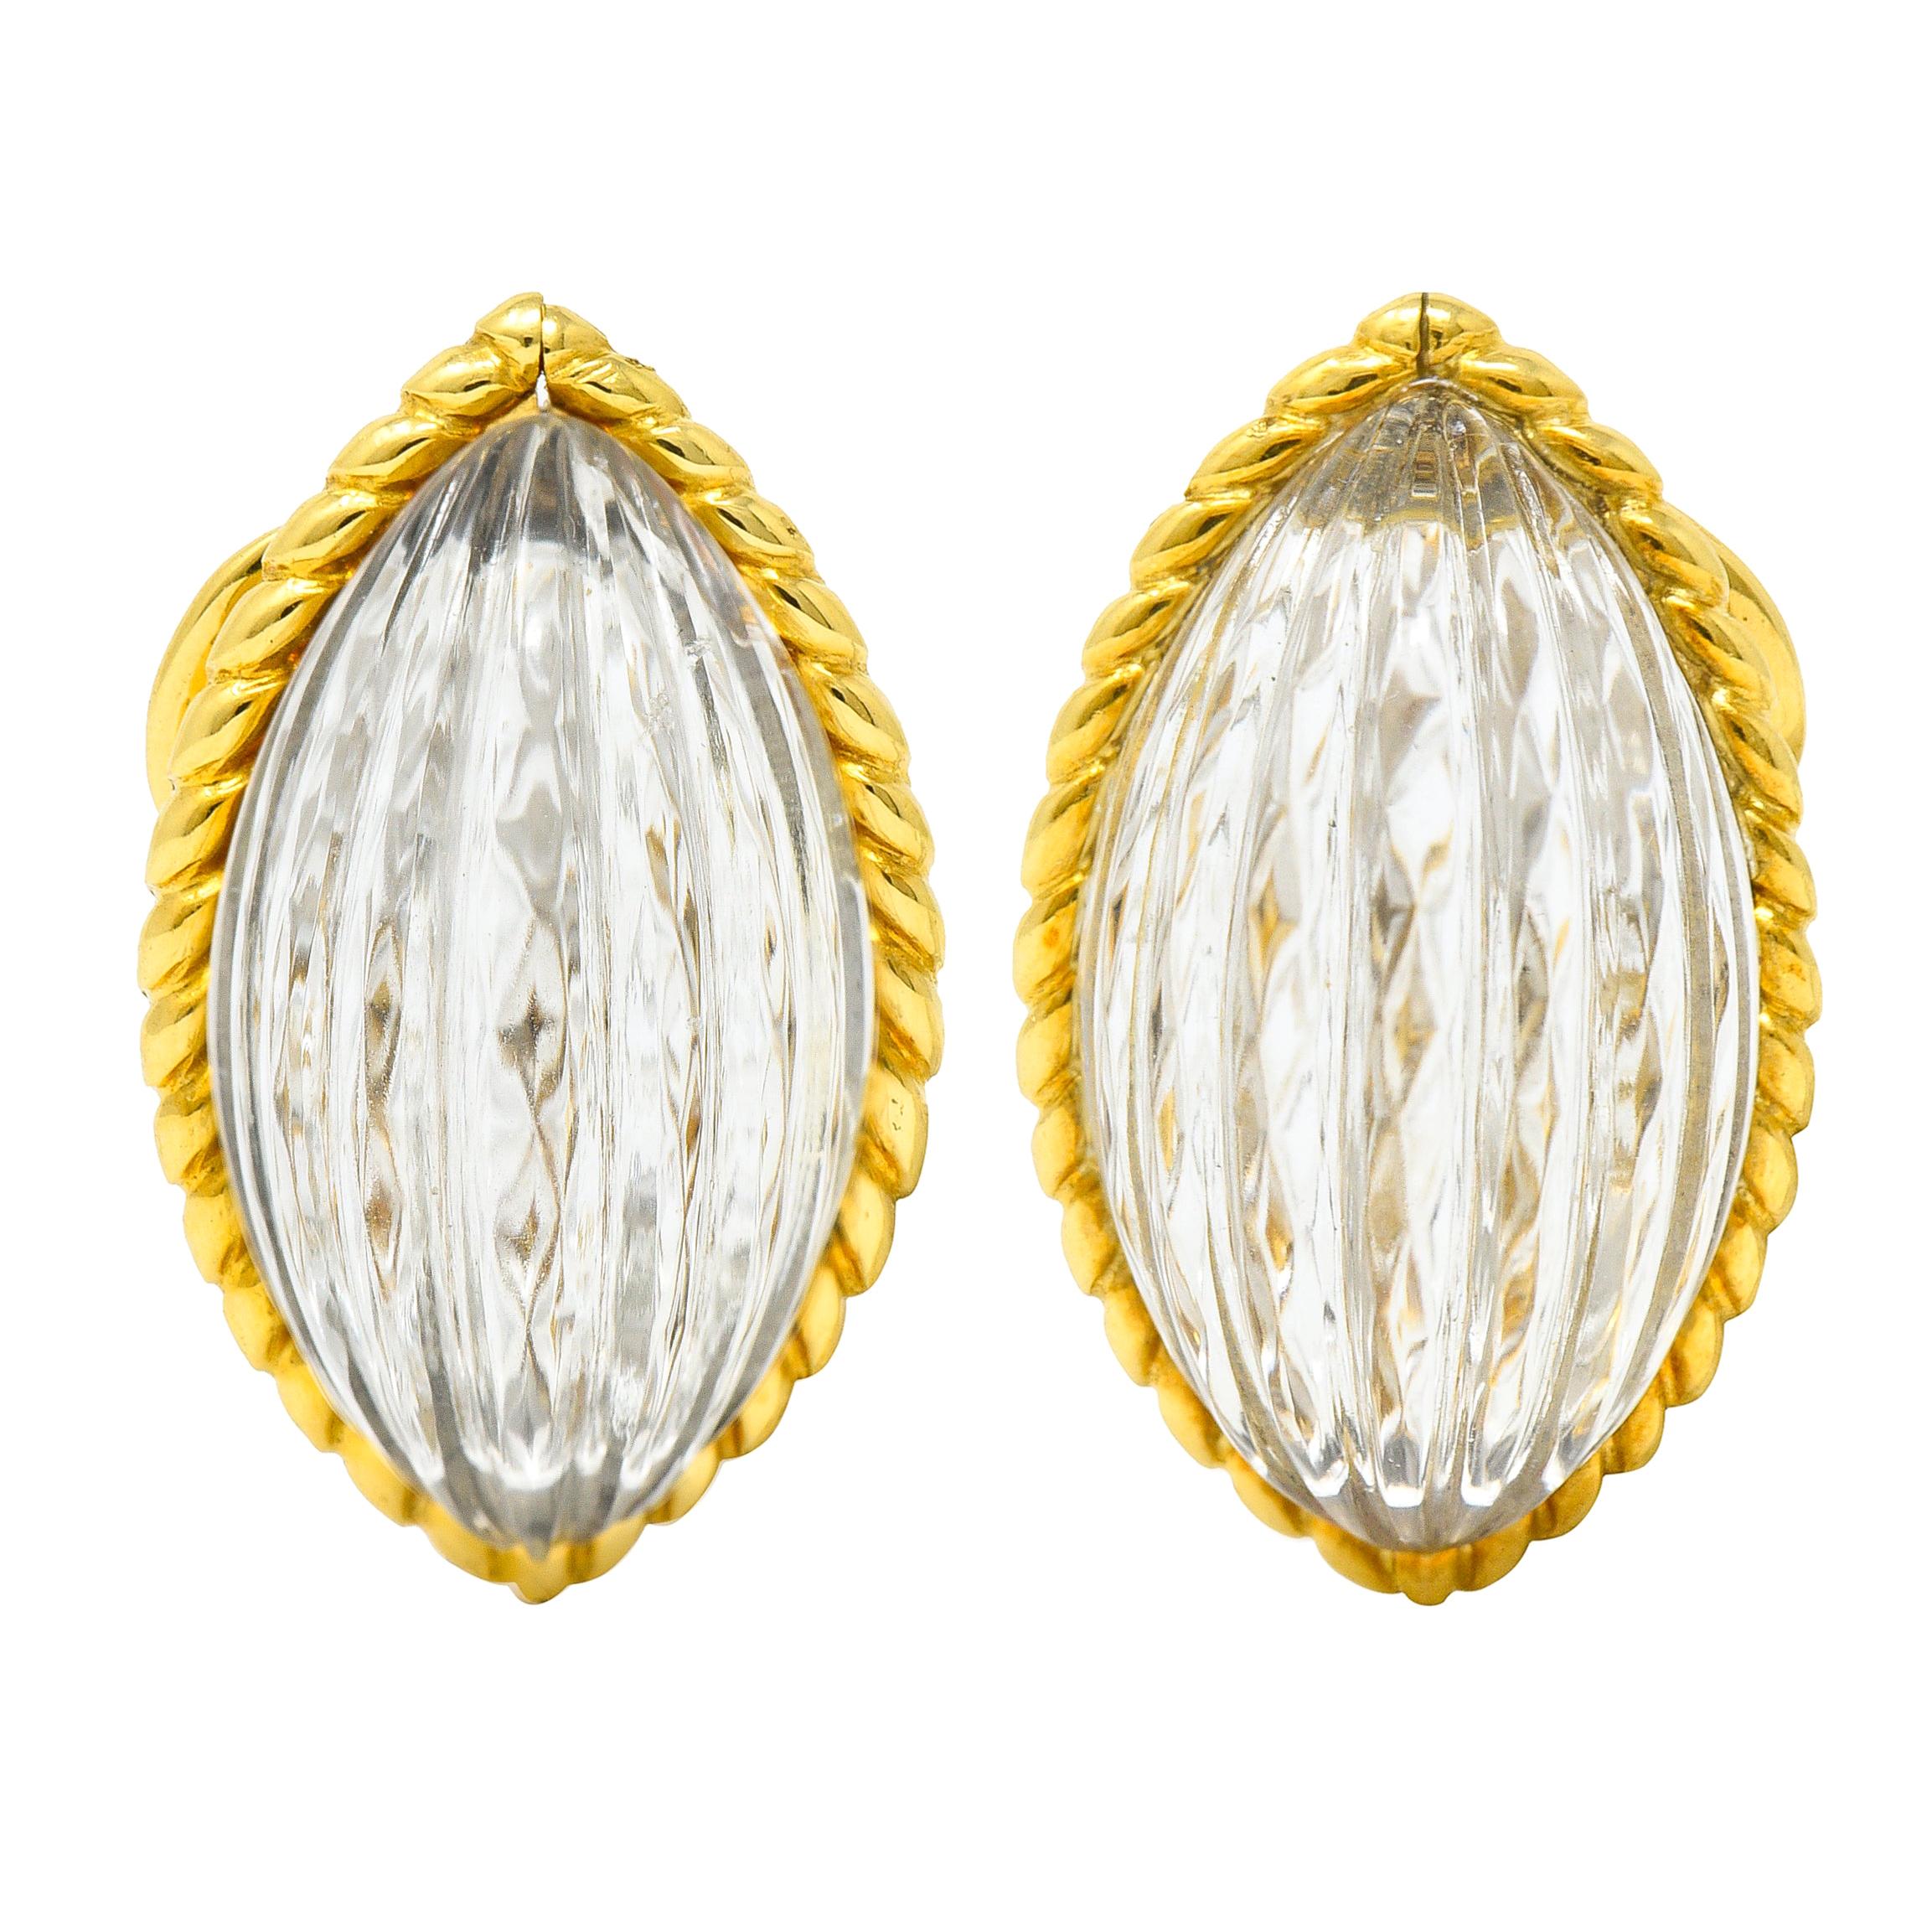 French Arfan Vintage Fluted Rock Crystal Quartz 18 Karat Gold Ear-Clip Earrings